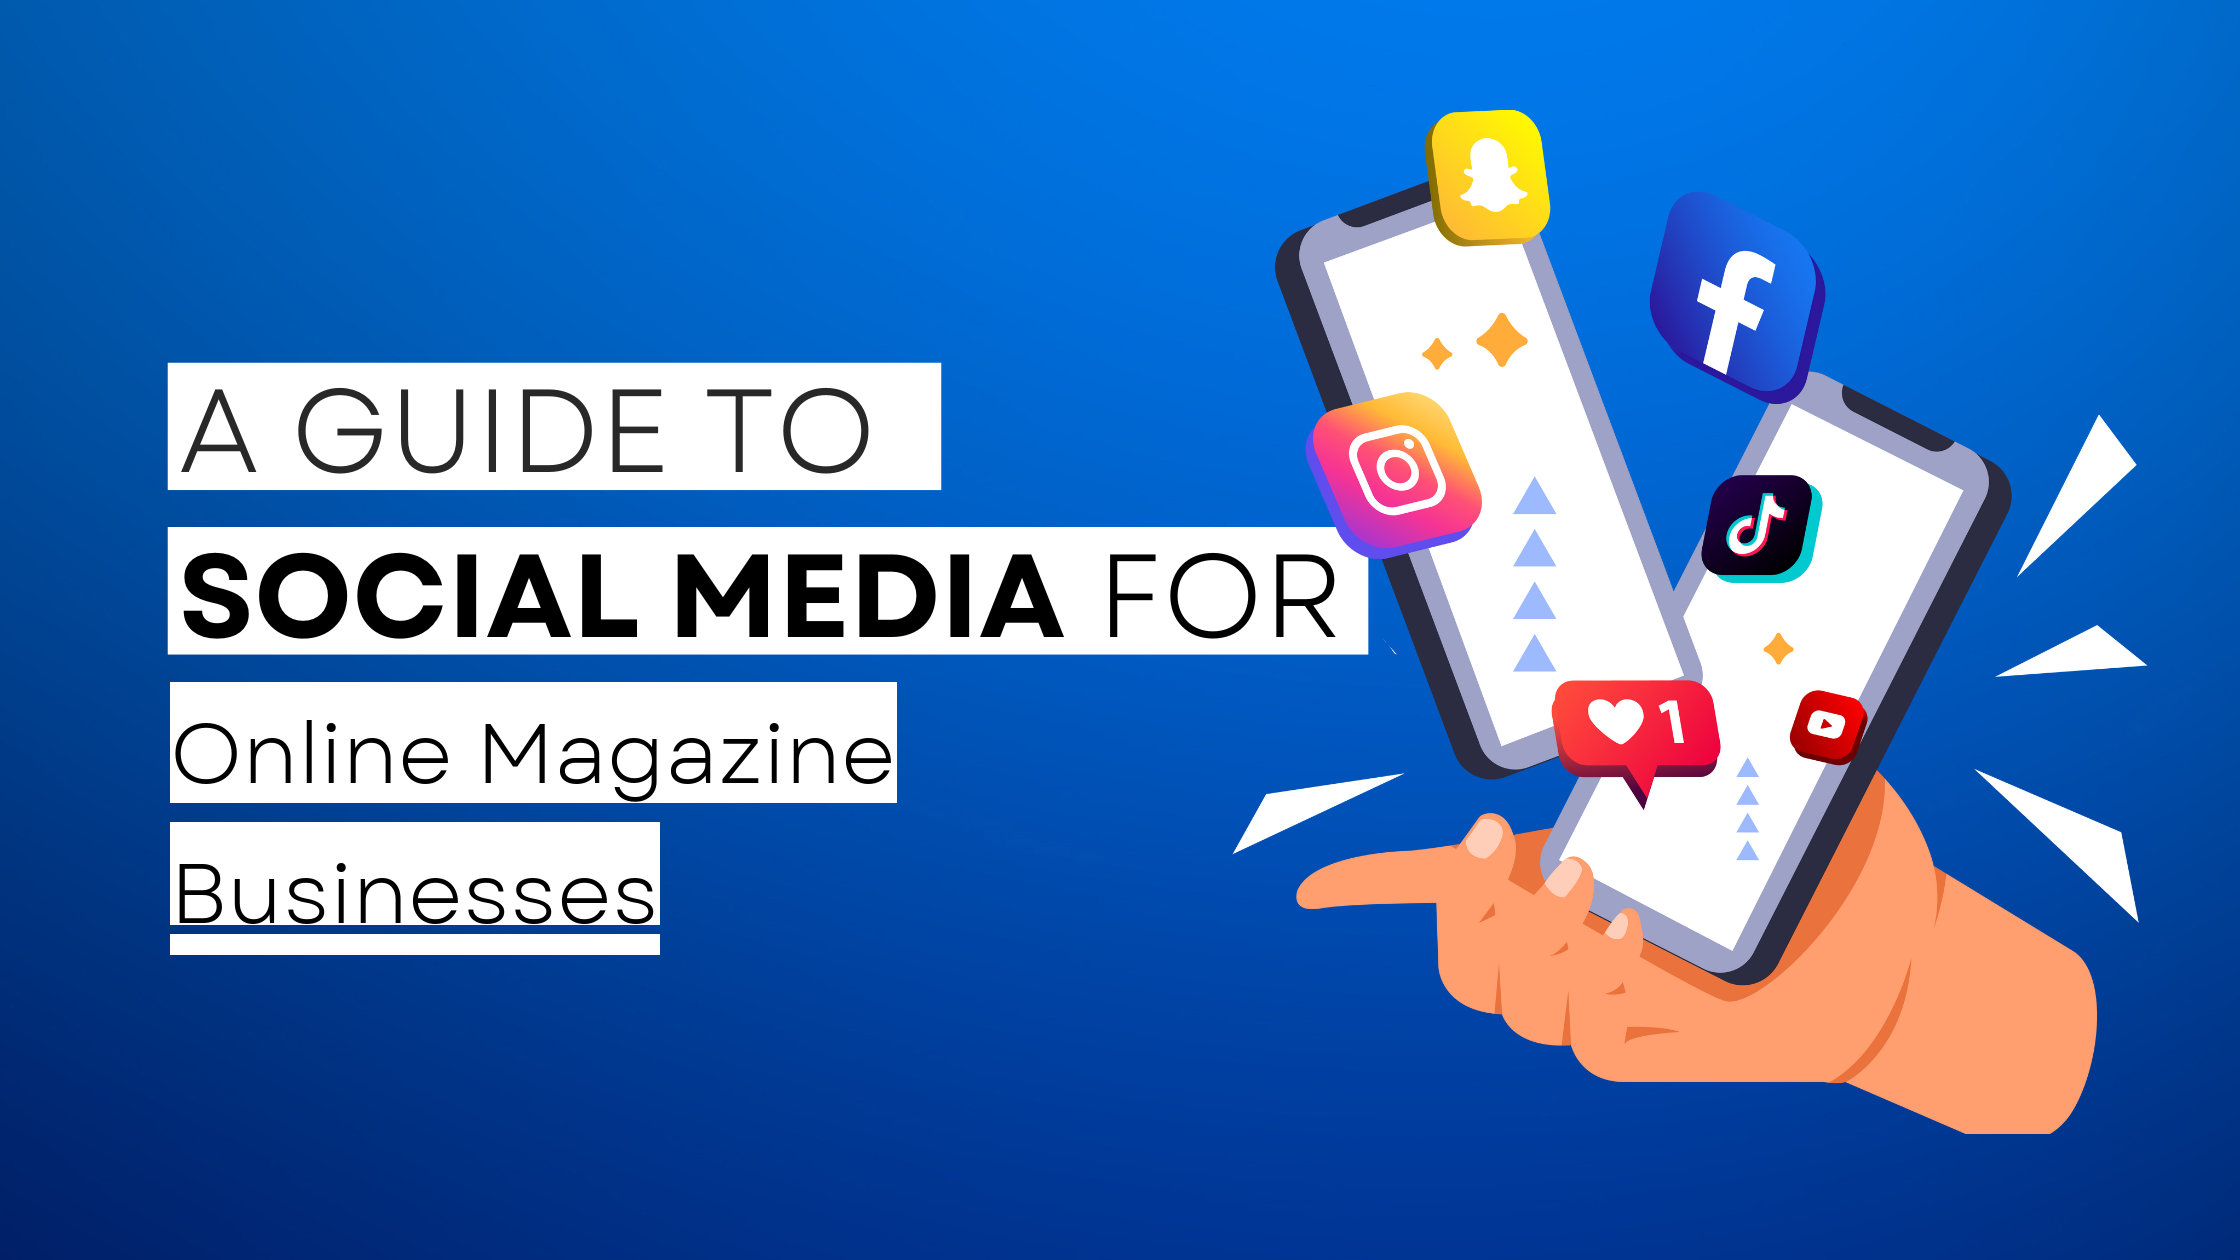 How to start Online Magazine  on social media